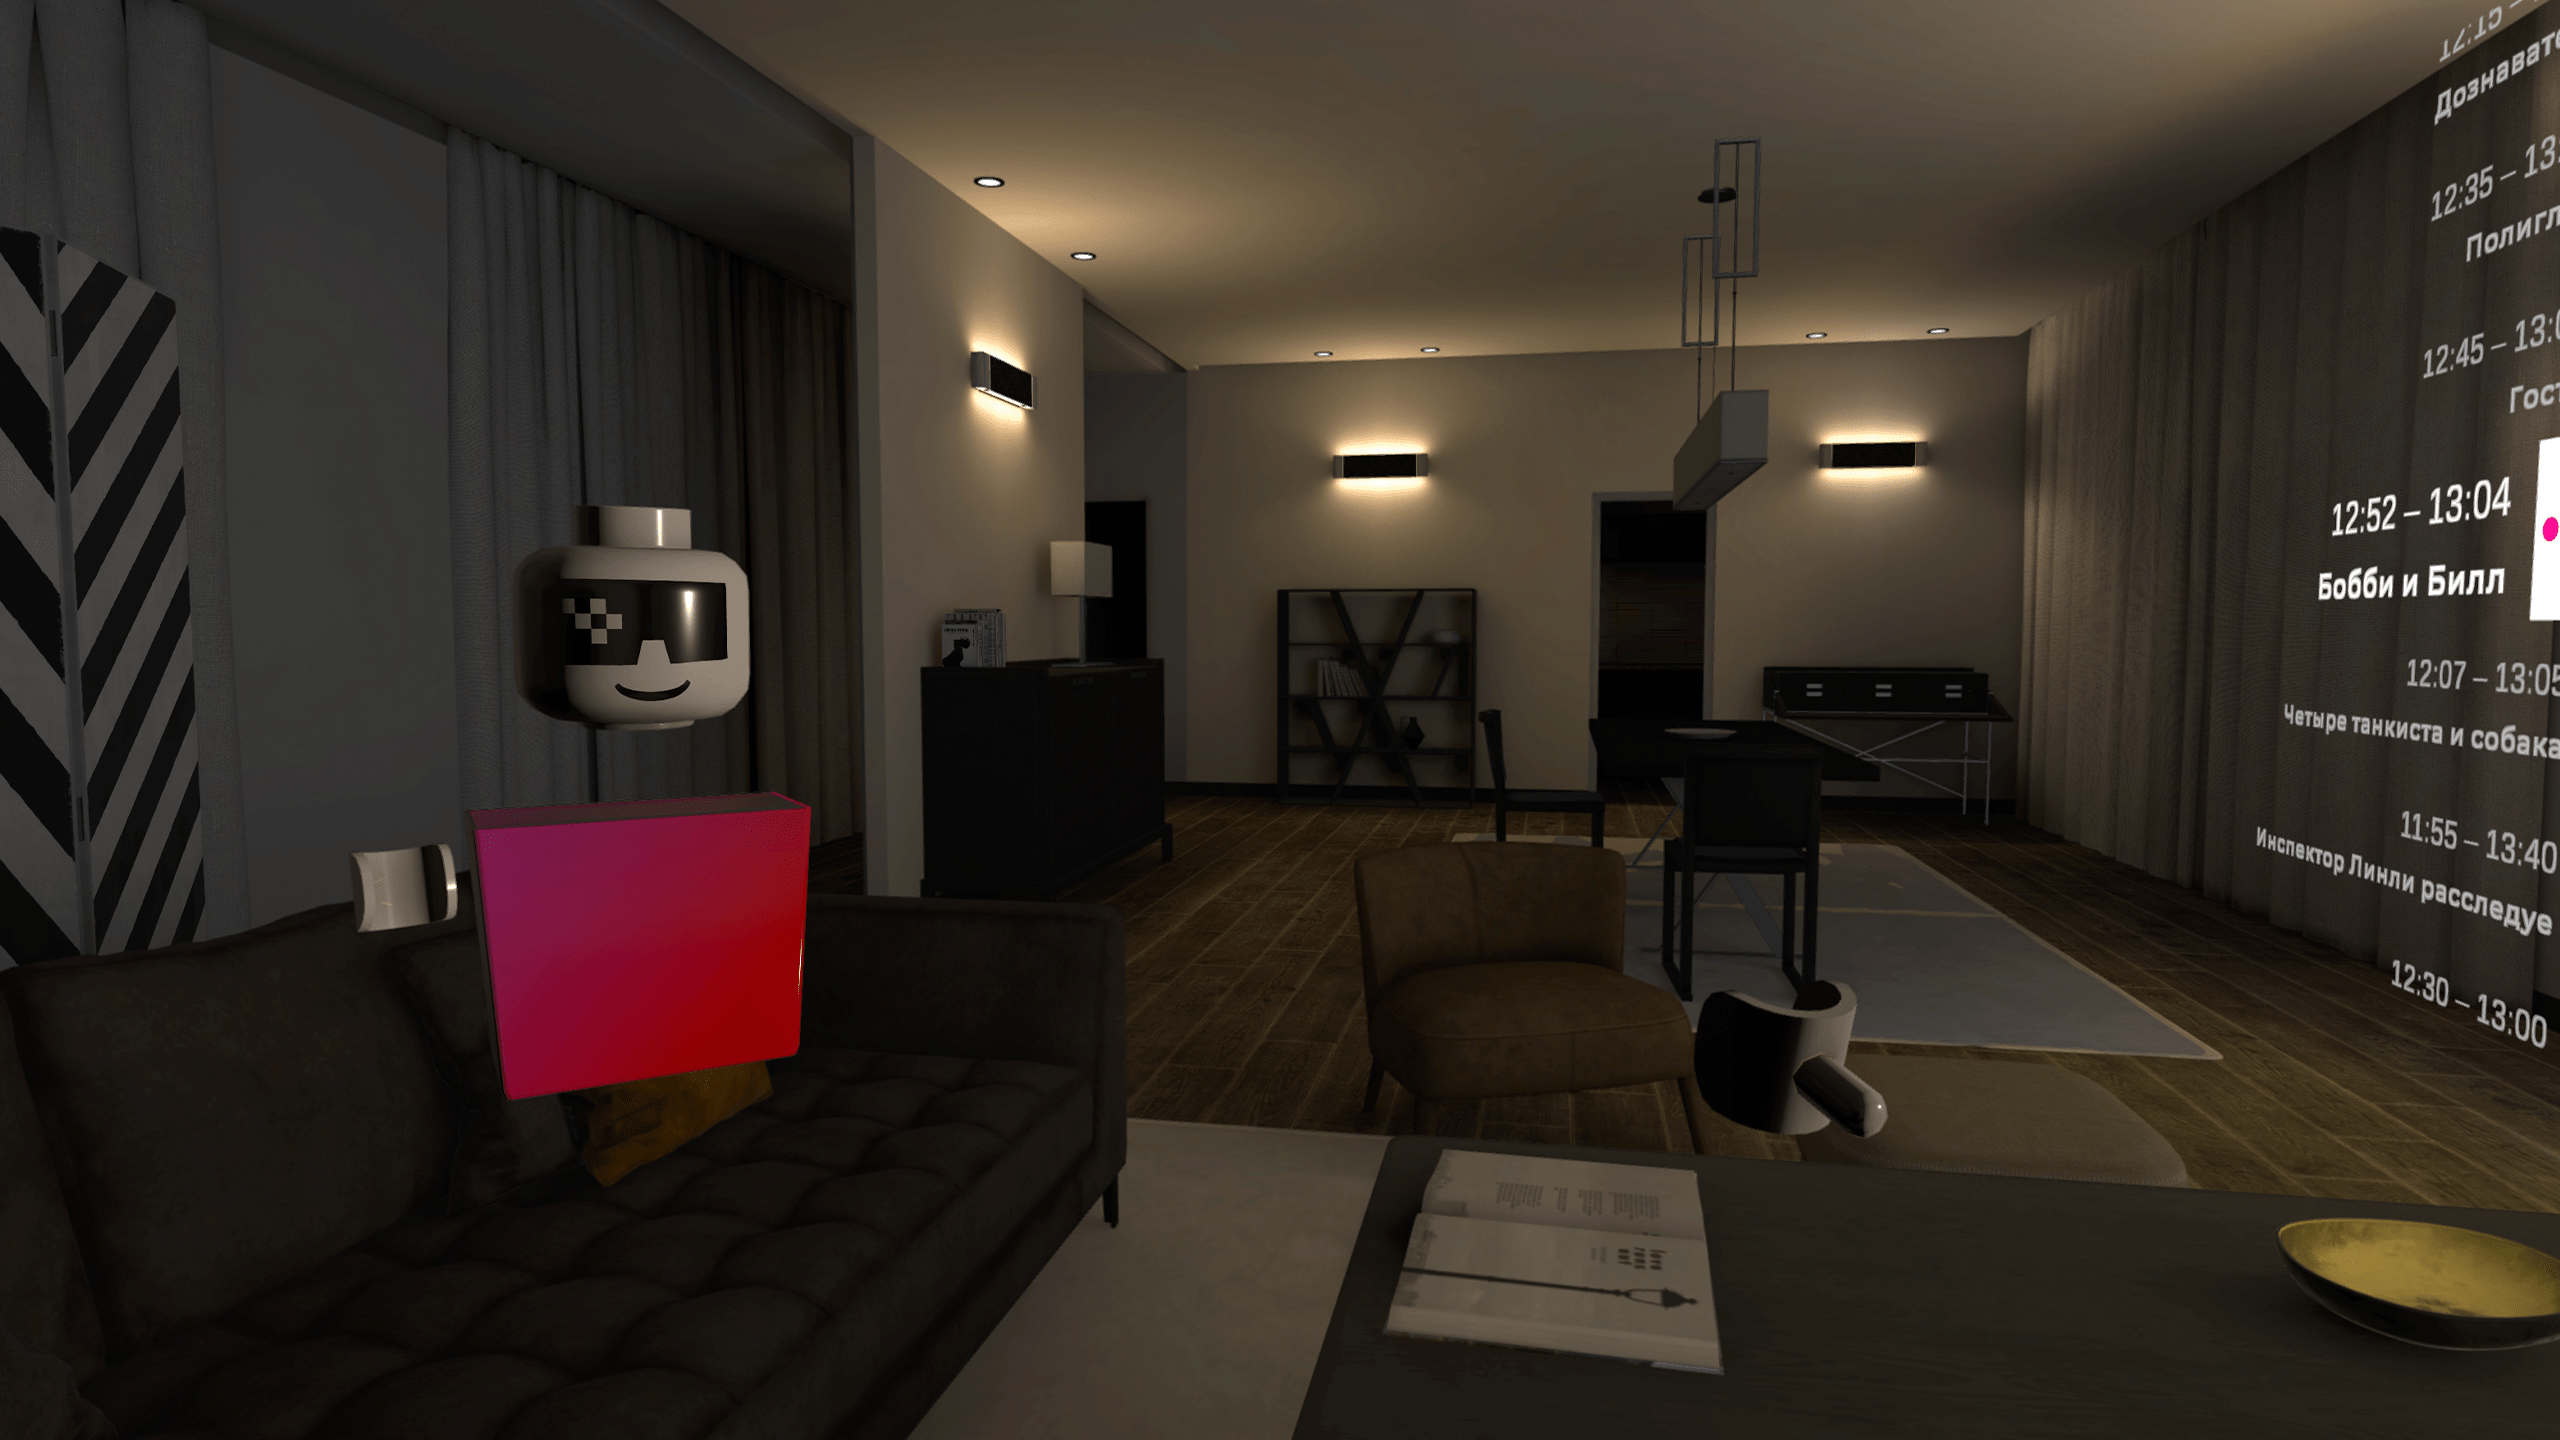 Трафика дом. Виртуальная гостиная. VR приложения комнаты.